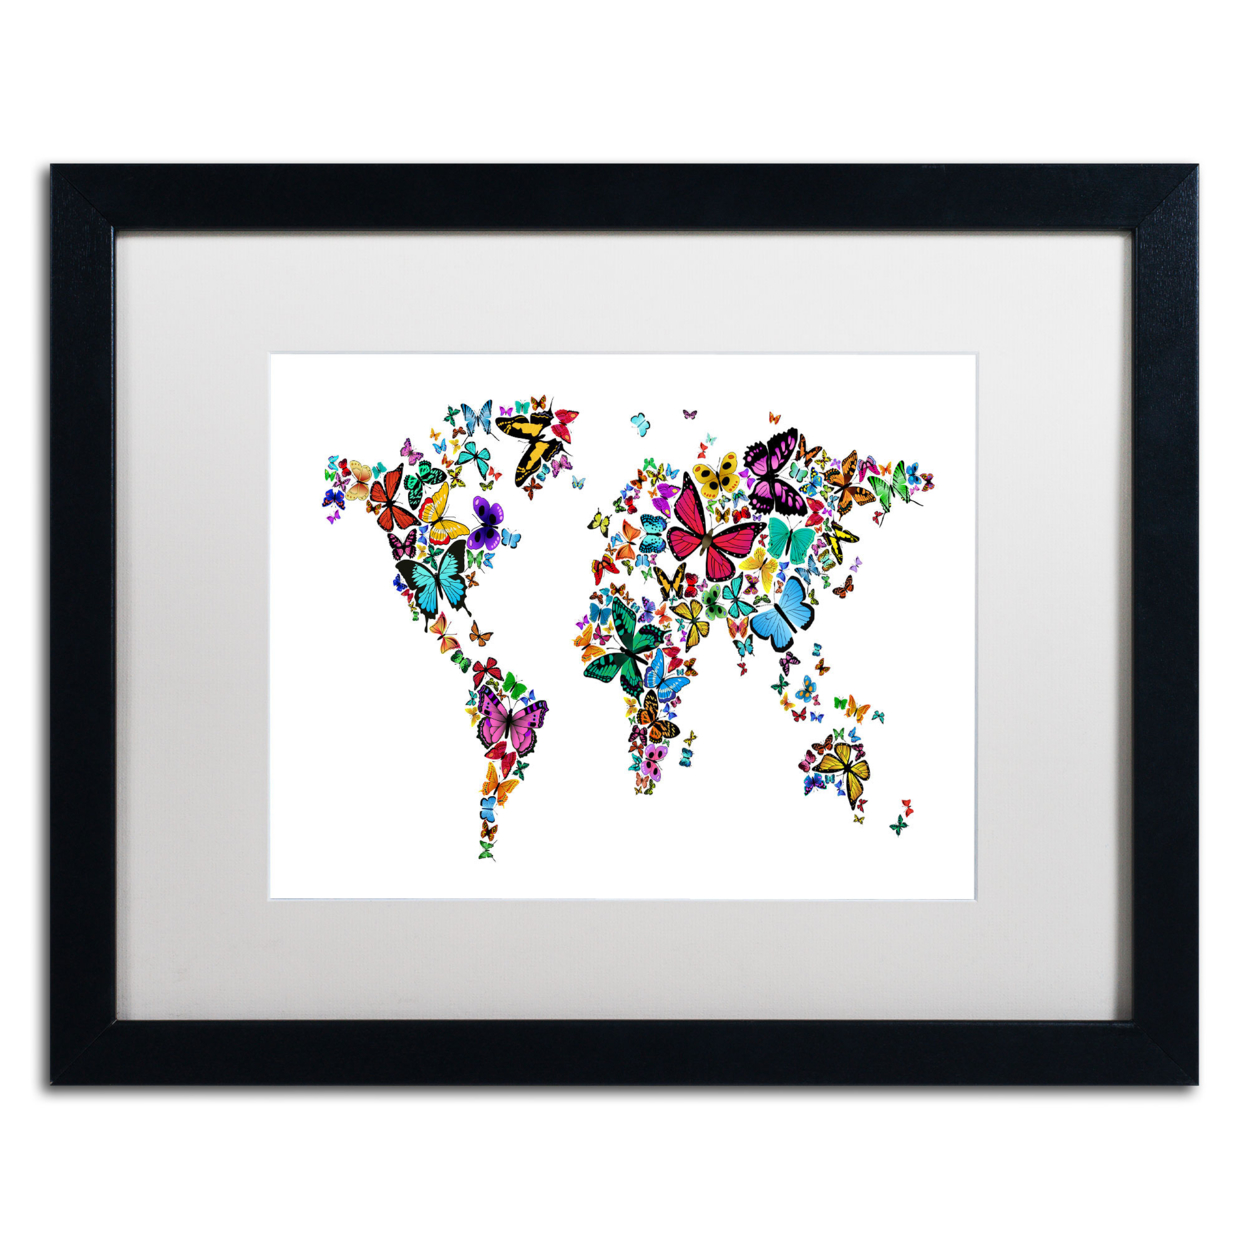 Michael Tompsett 'Butterflies Map Of The World' Black Wooden Framed Art 18 X 22 Inches